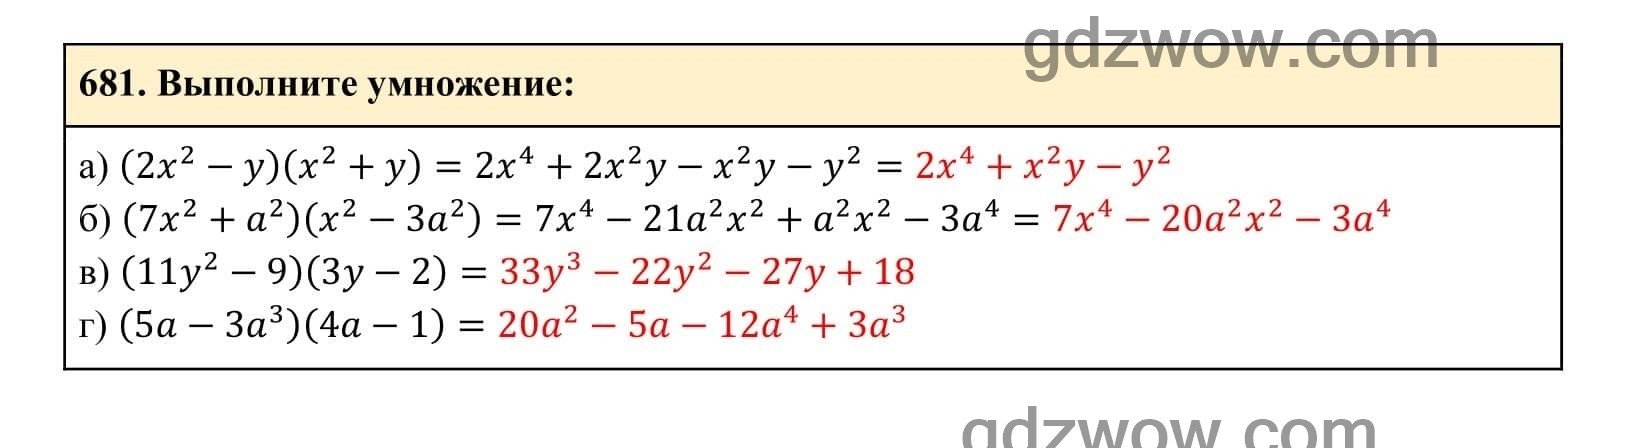 Упражнение 681 - ГДЗ по Алгебре 7 класс Учебник Макарычев (решебник) - GDZwow